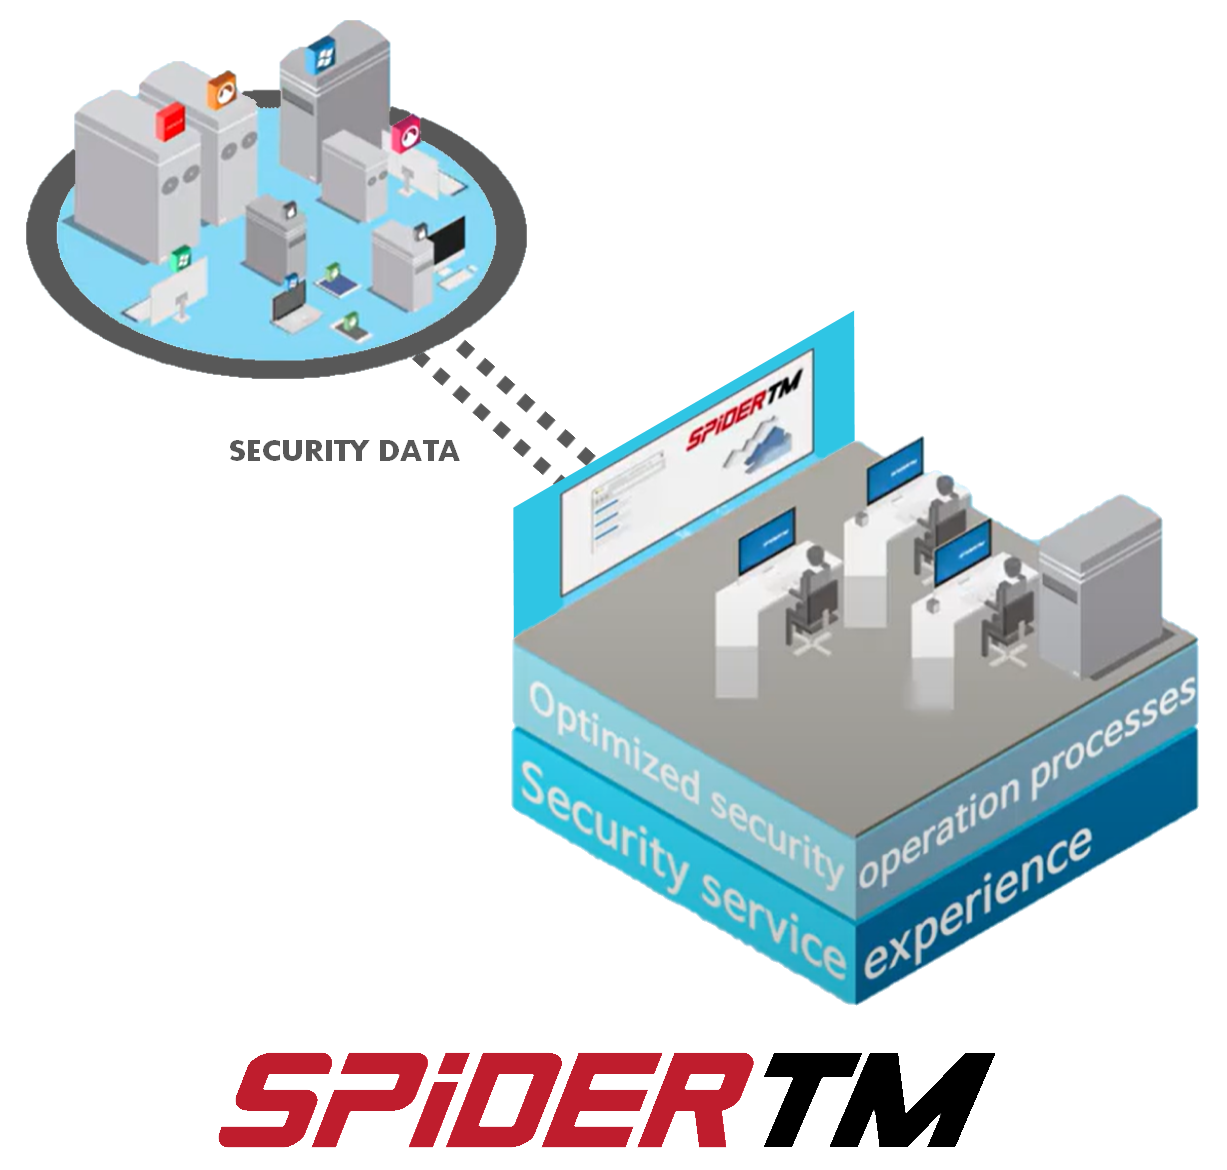 セキュリティ管理を一元管理出来るSPiDERTMはSIEM製品